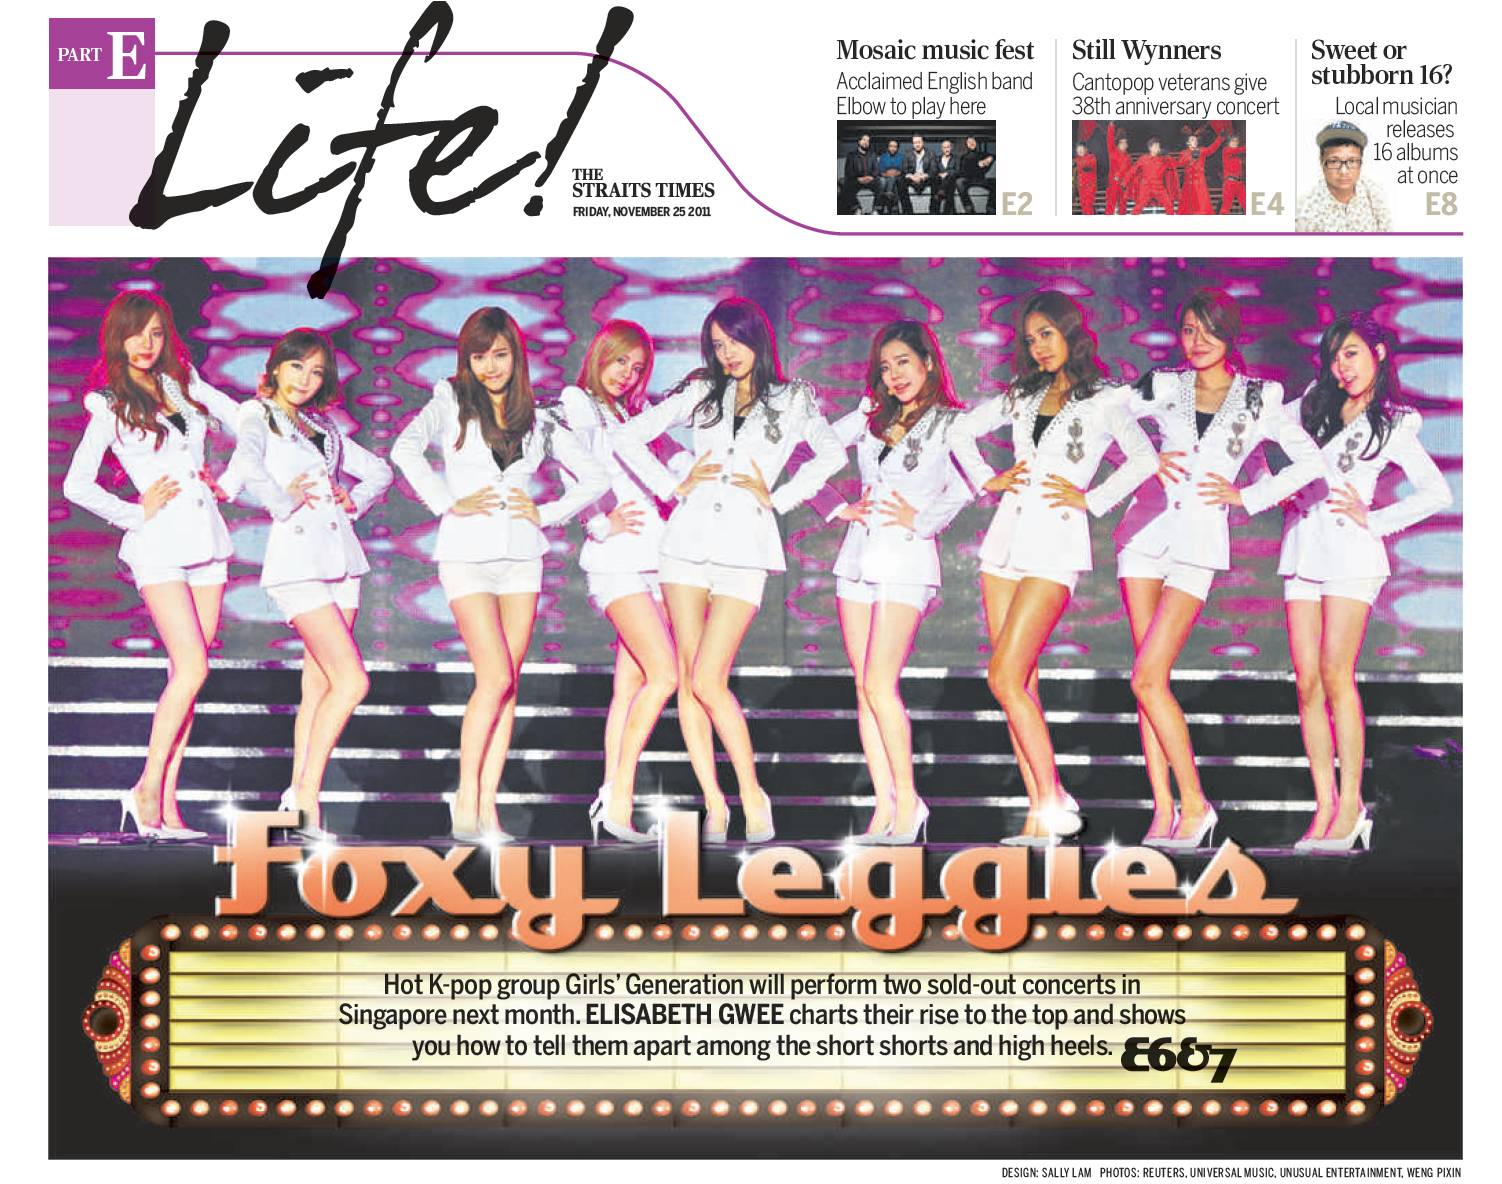 소녀시대 프랑스 잡지 & 싱가폴 신문 특집 기사